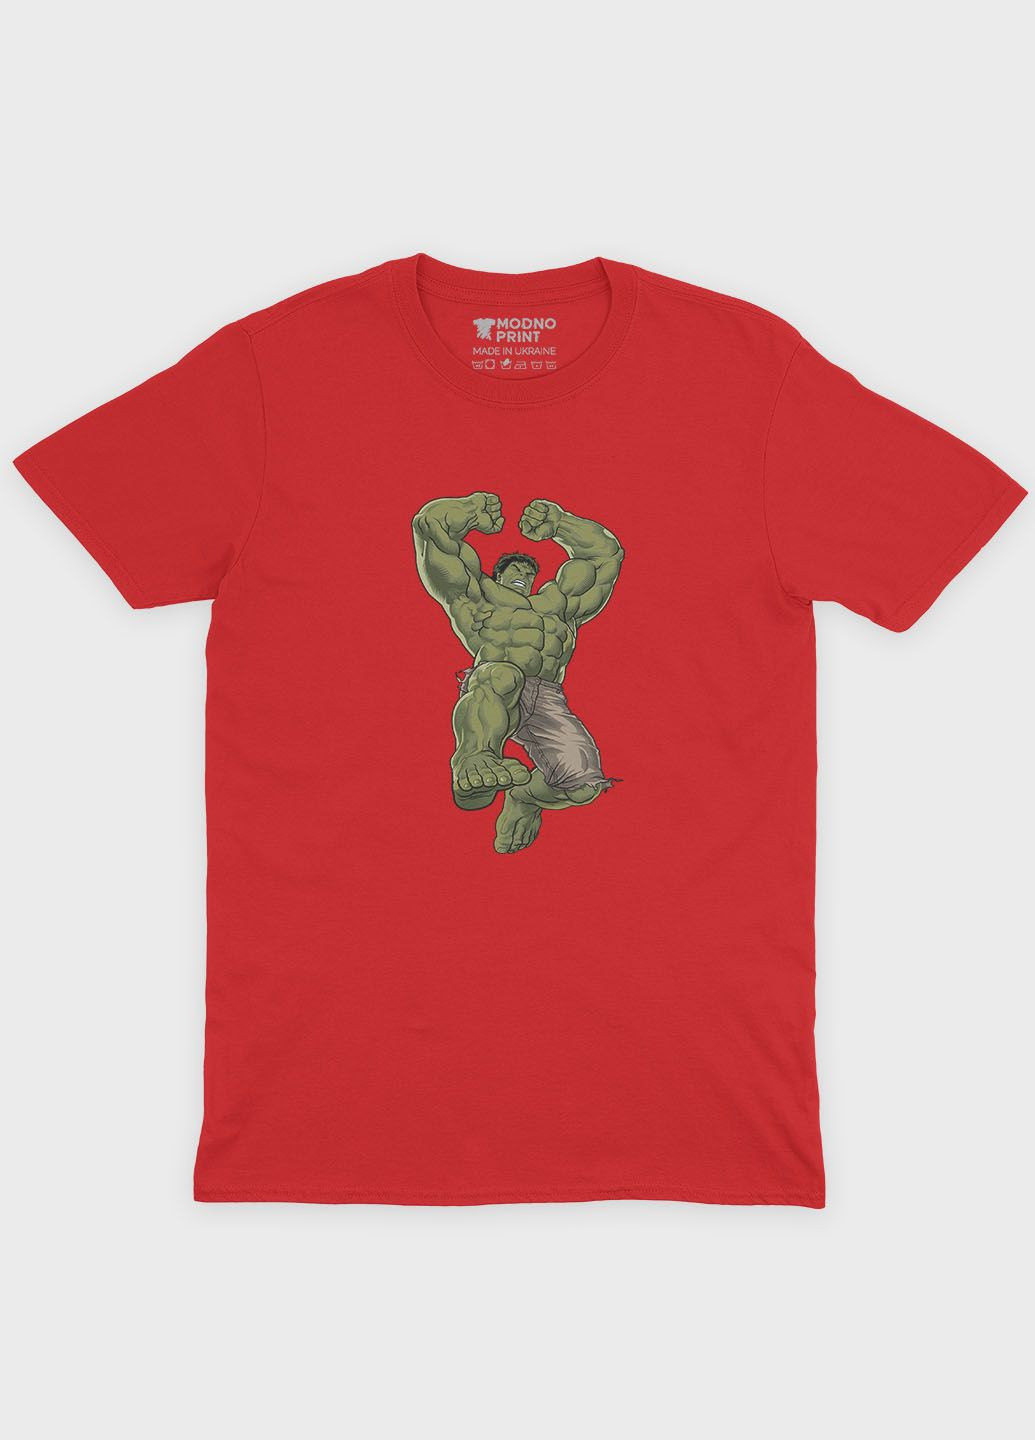 Красная демисезонная футболка для мальчика с принтом супергероя - халк (ts001-1-sre-006-018-011-b) Modno